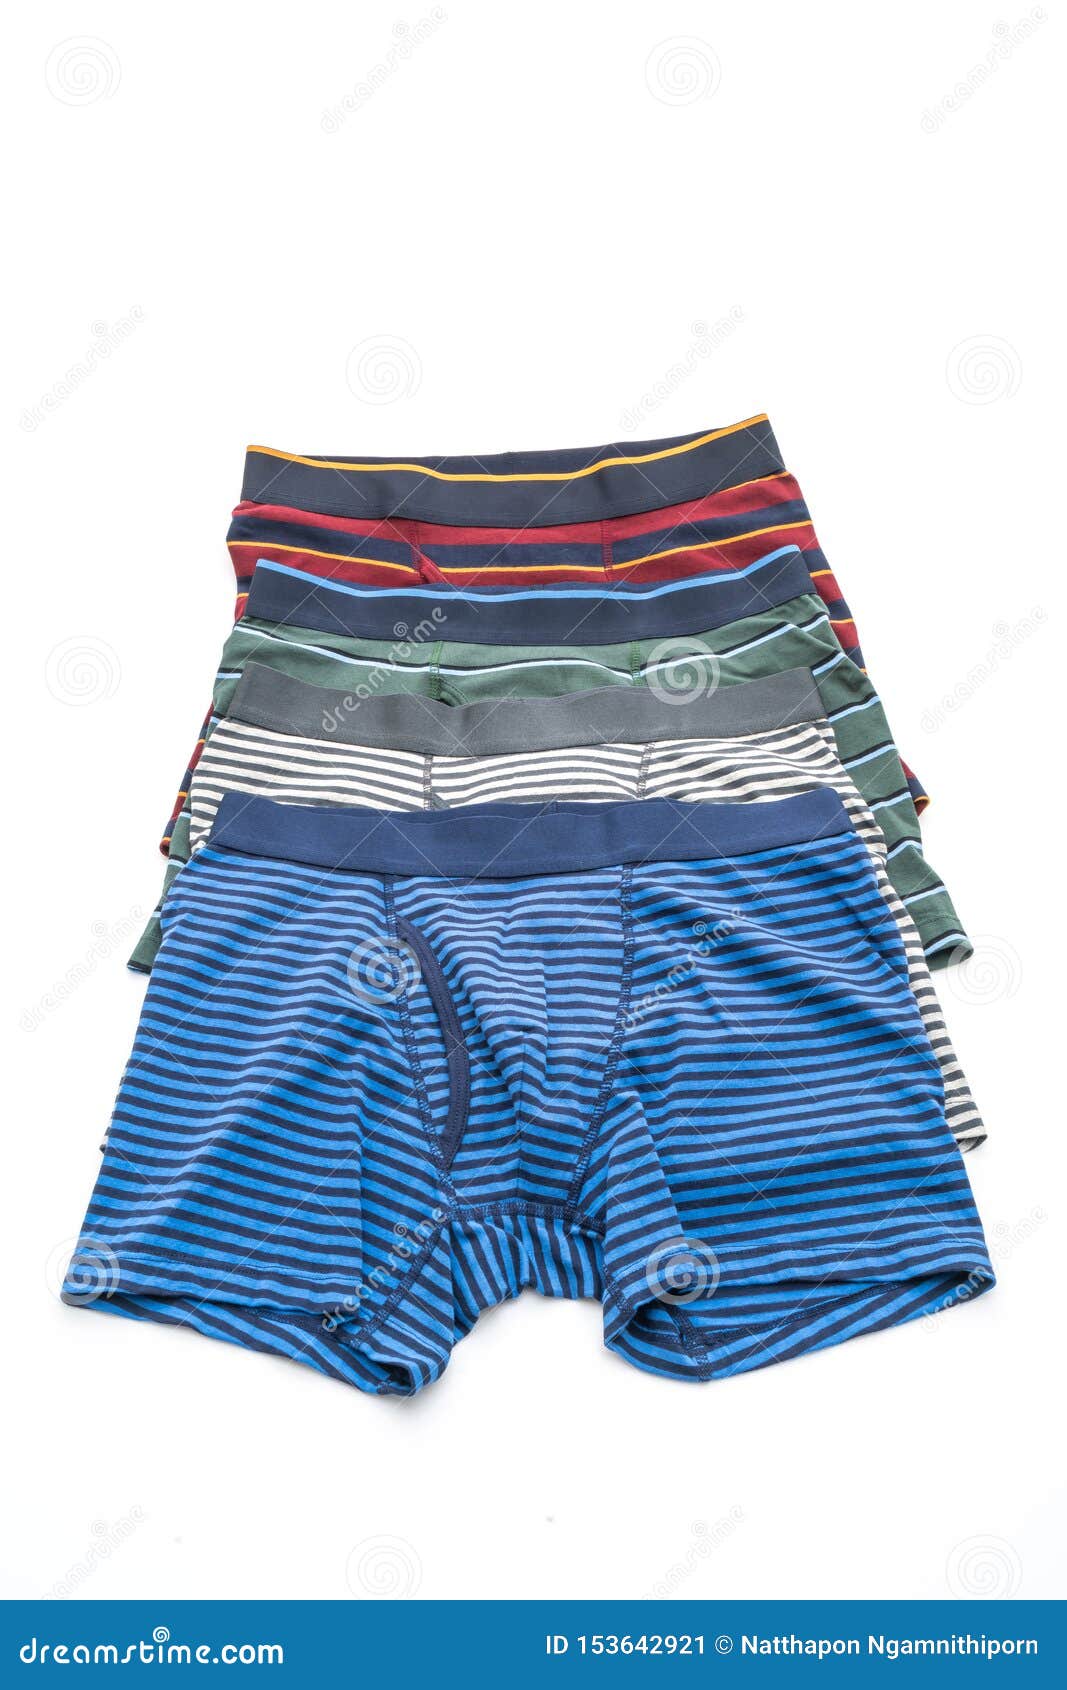 Striped men underwear stock image. Image of boxer, panties - 153642921